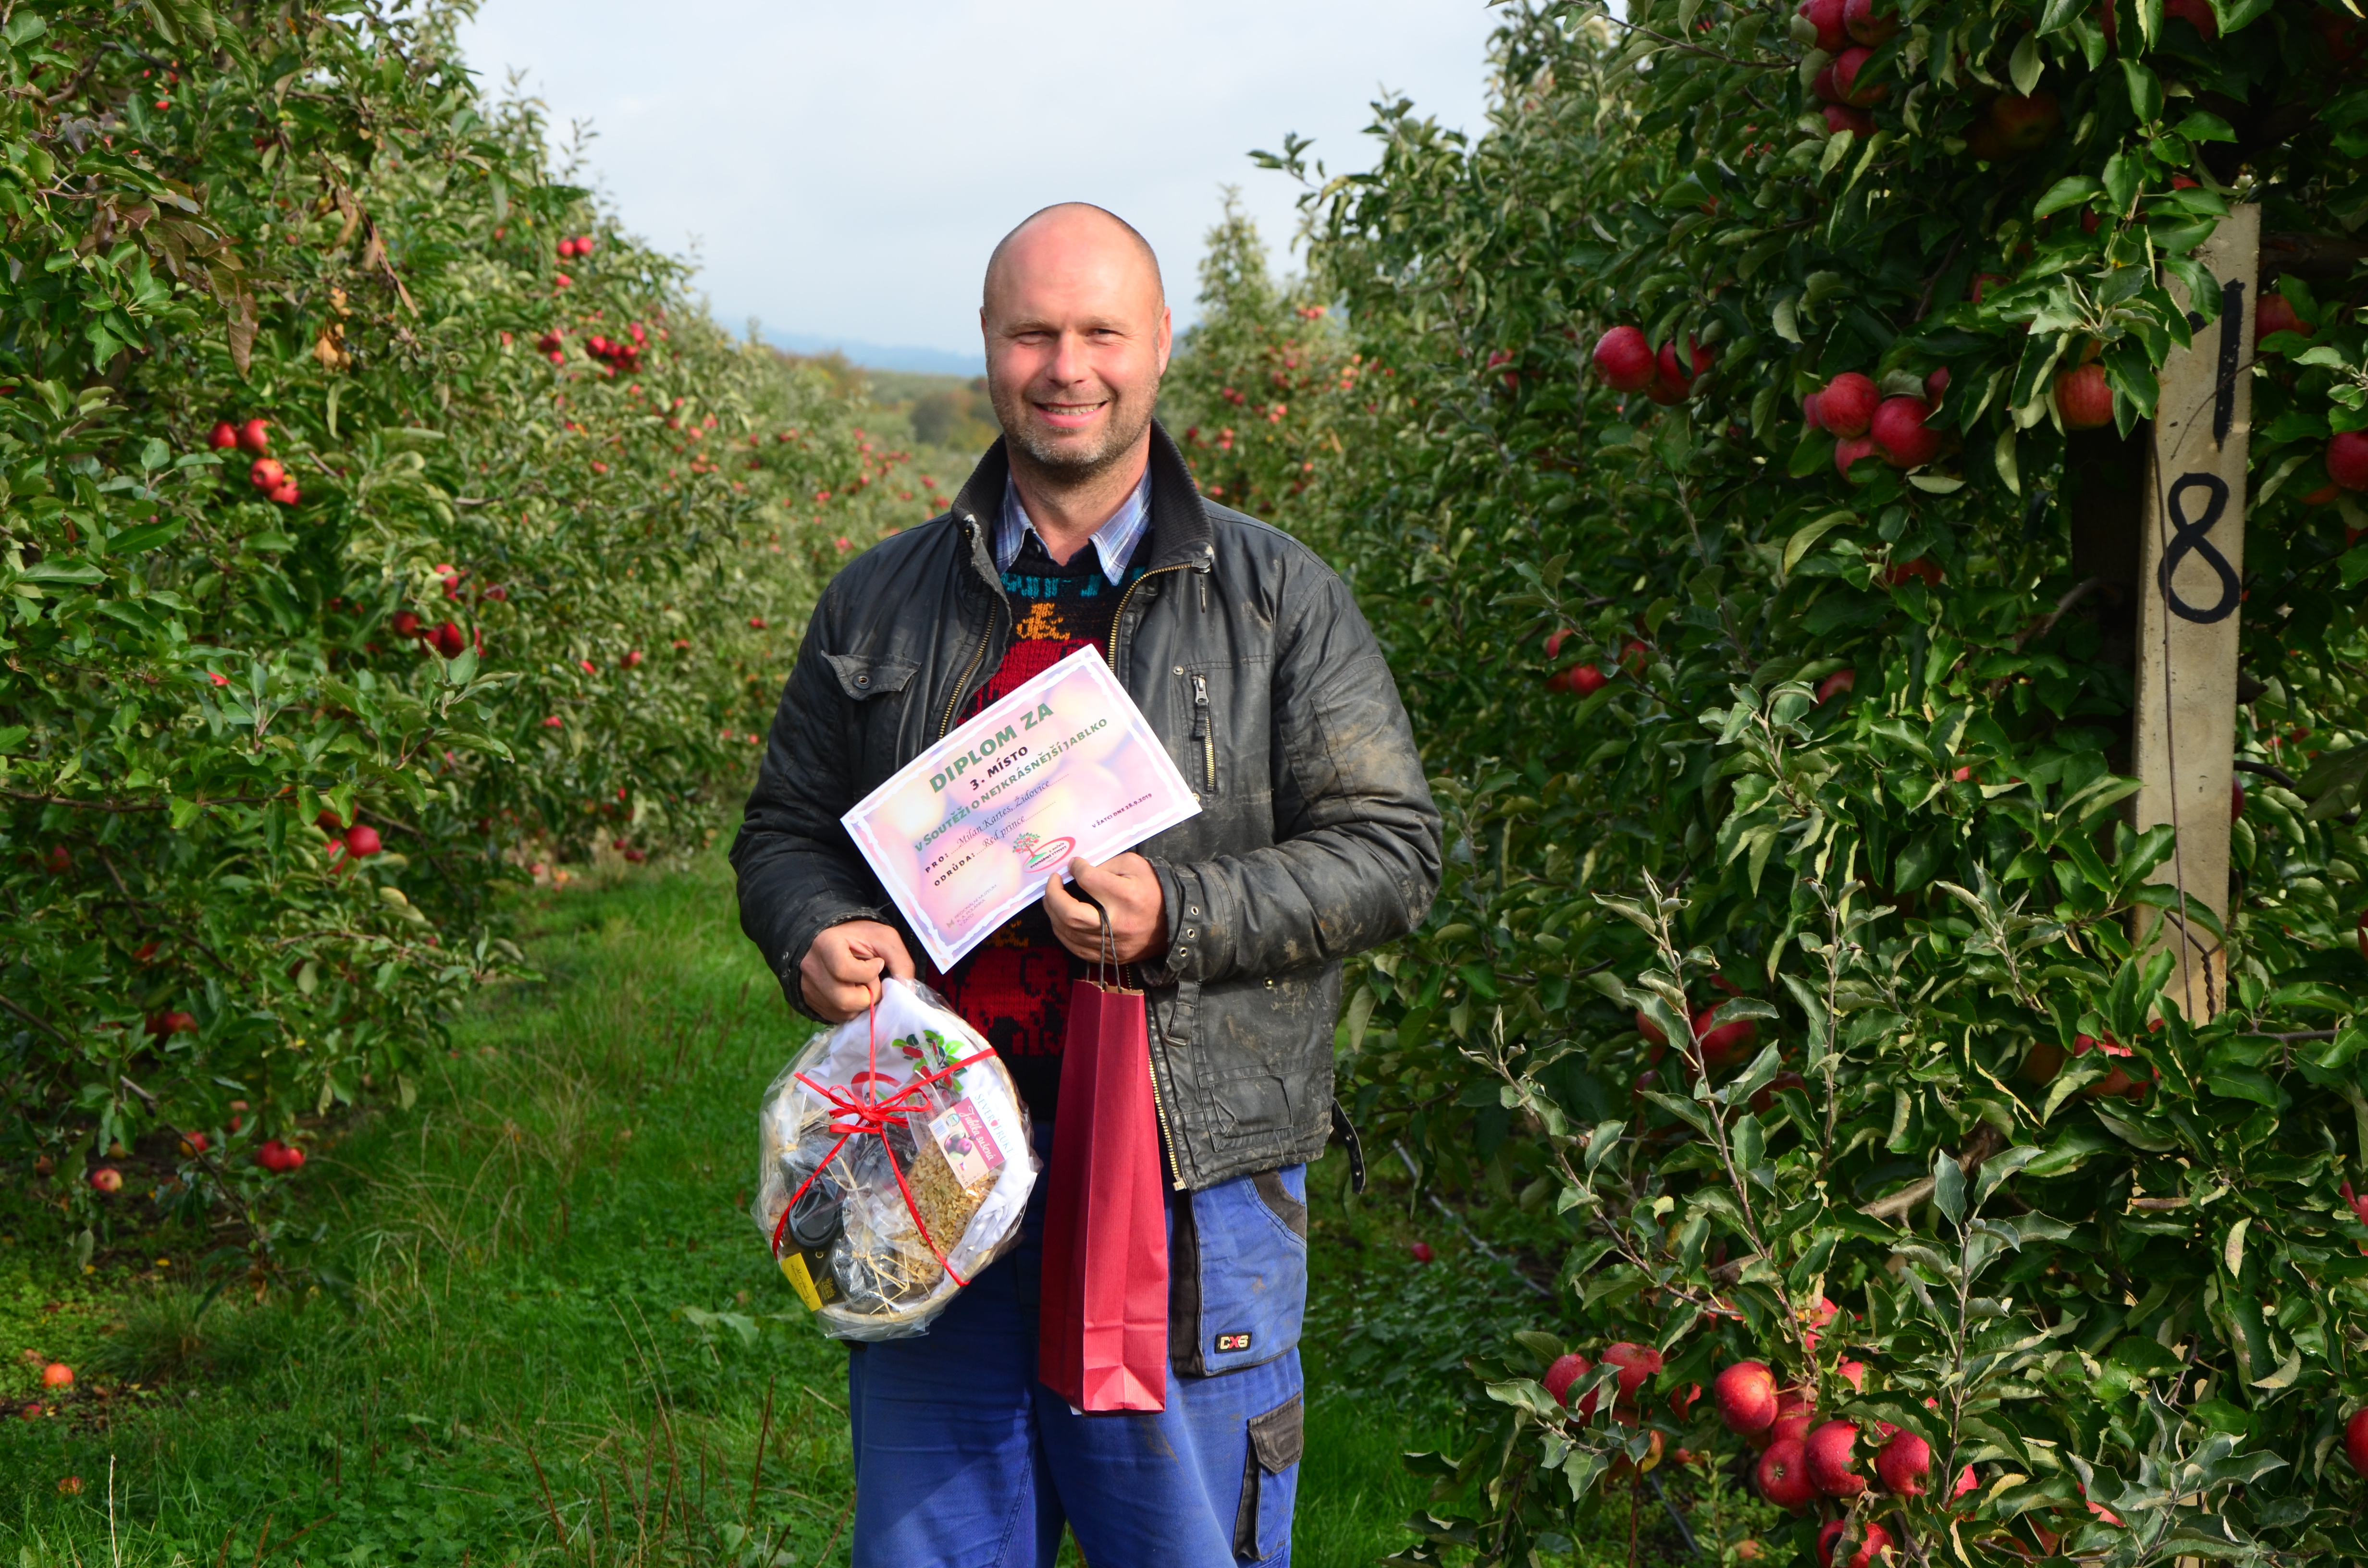 3 místo v soutěži o nejhezší jablko za odrůdu Reg prince získal Milan Kartes ze Židovic